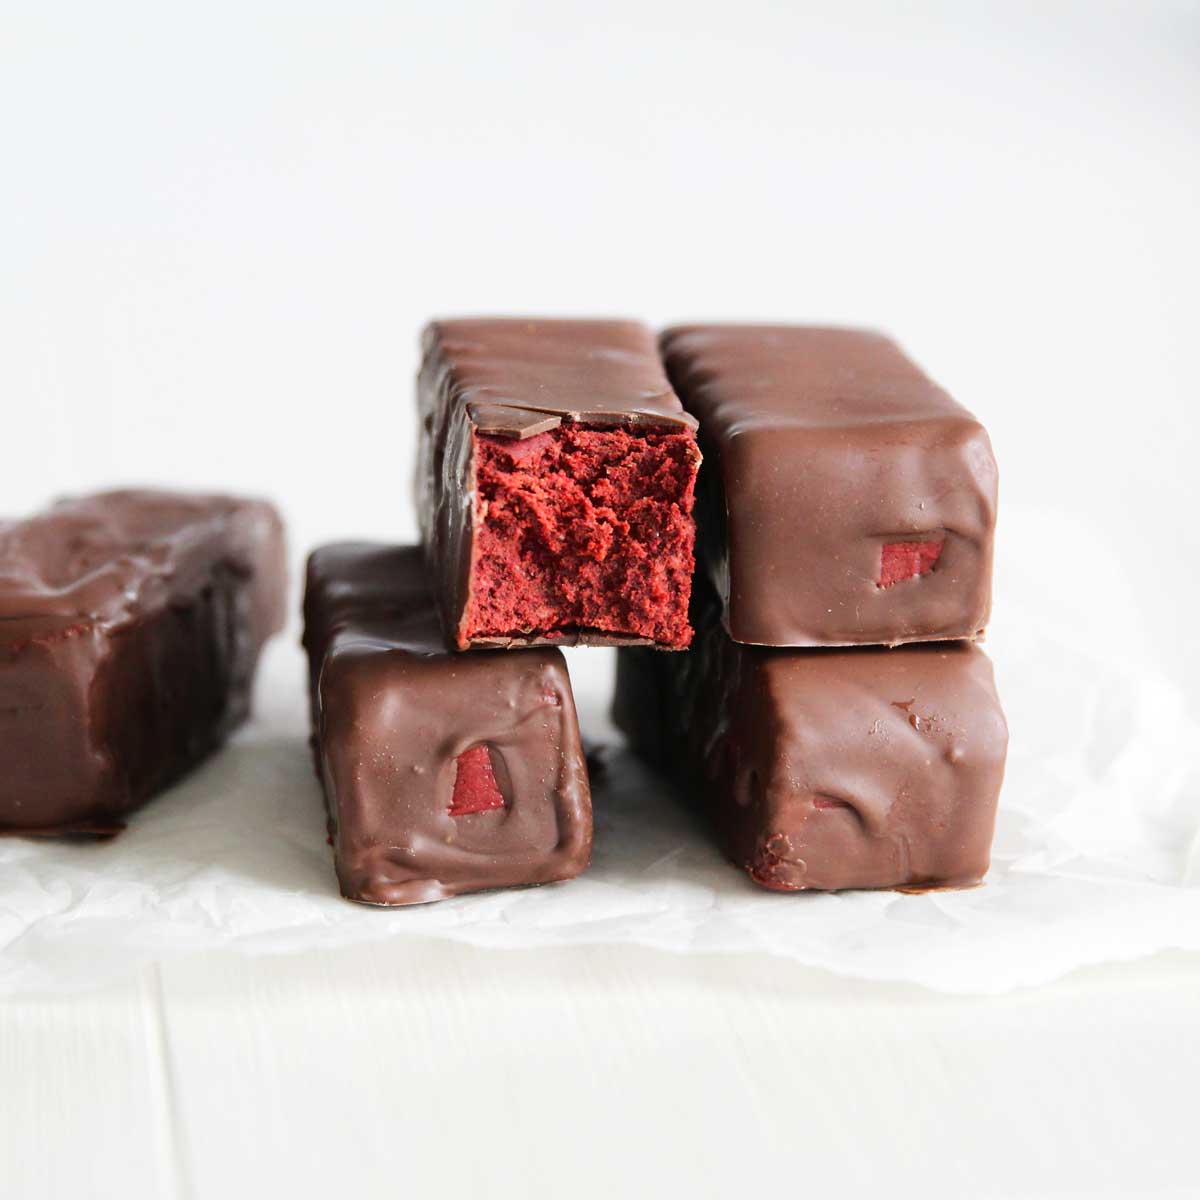 Gluten Free Red Velvet Cake Protein Bars (The Best Guilt-Free Dessert) - Strawberry Whipped Cream